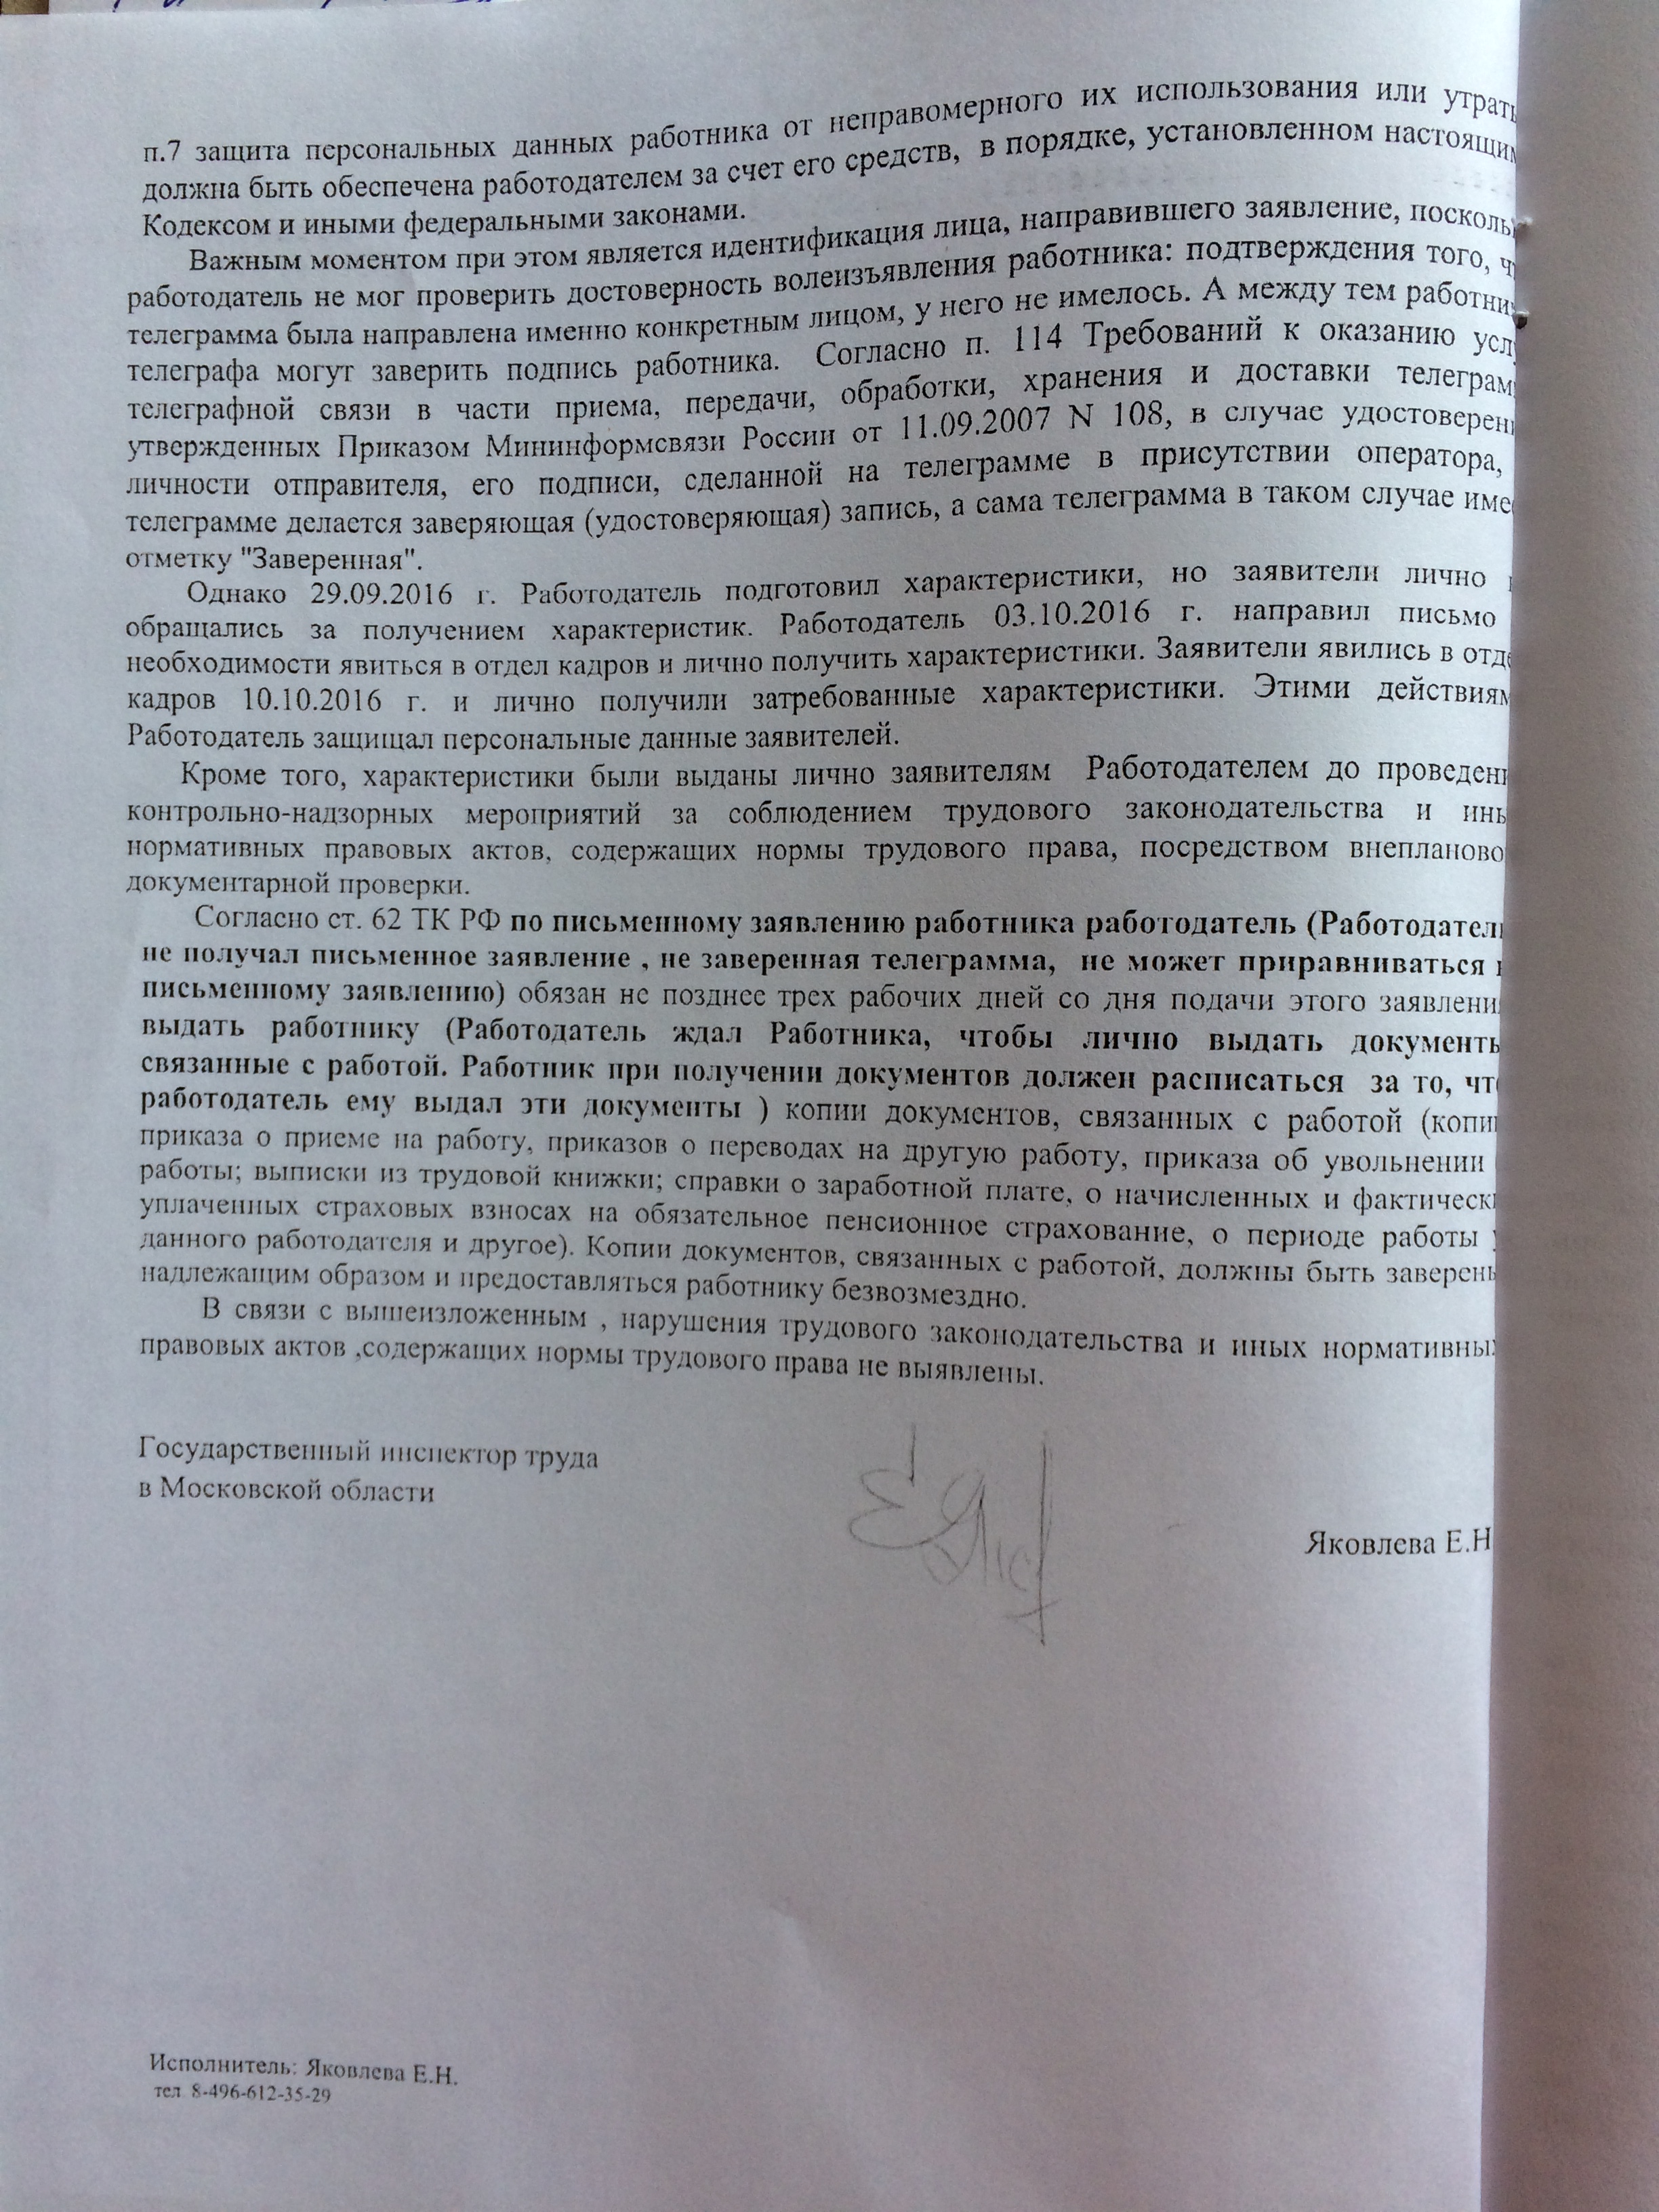 Фото документов проверки Луховицкой городской прокуратурой - 129 (5)